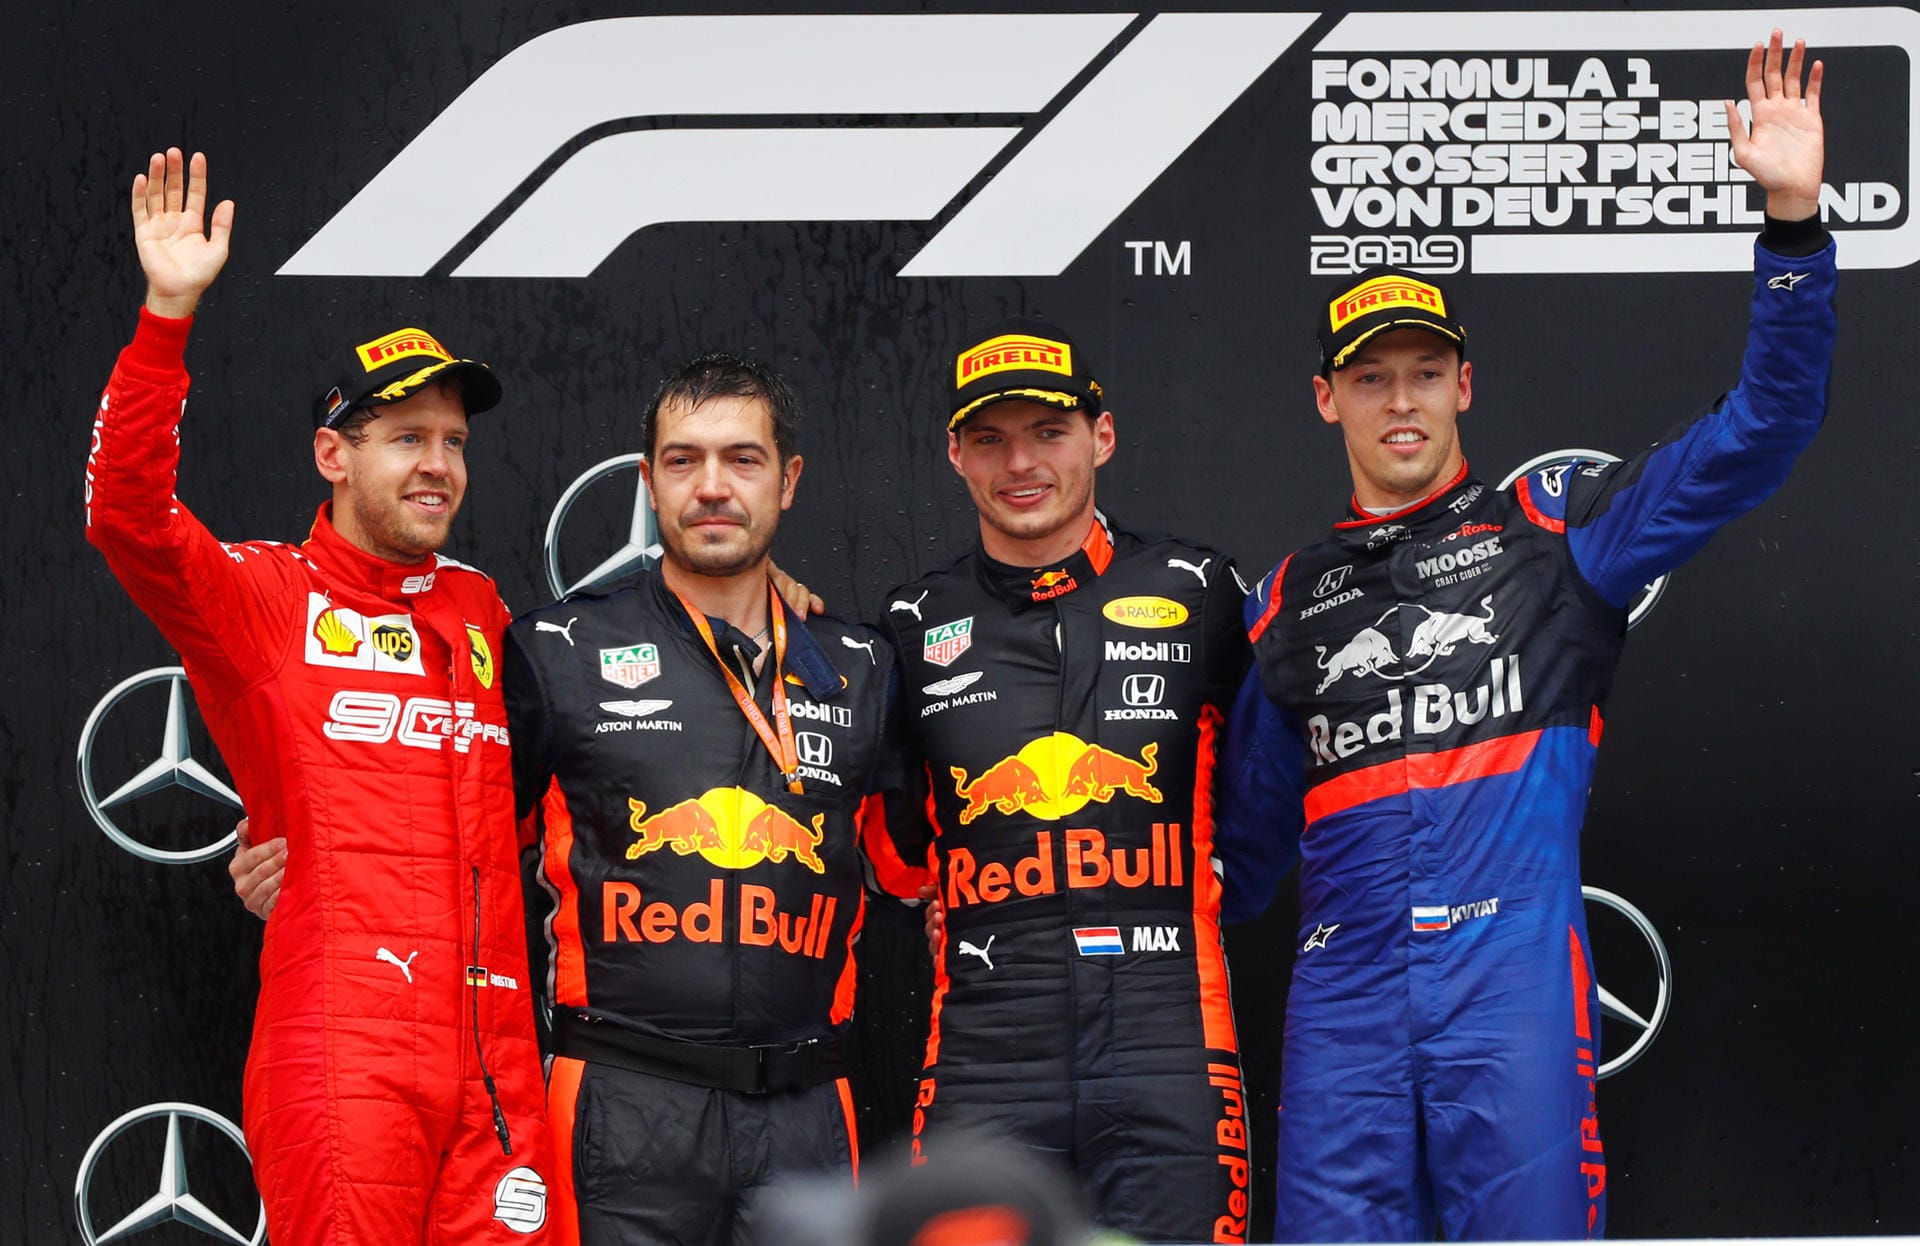 Nach einem spektakulären Rennen auf dem Hockenheimring jubeln der Zweitplatzierte Sebastian Vettel (links), Sieger Max Verstappen (Zweiter von rechts) und der Sensations-Dritte Daniil Kwyat (rechts).